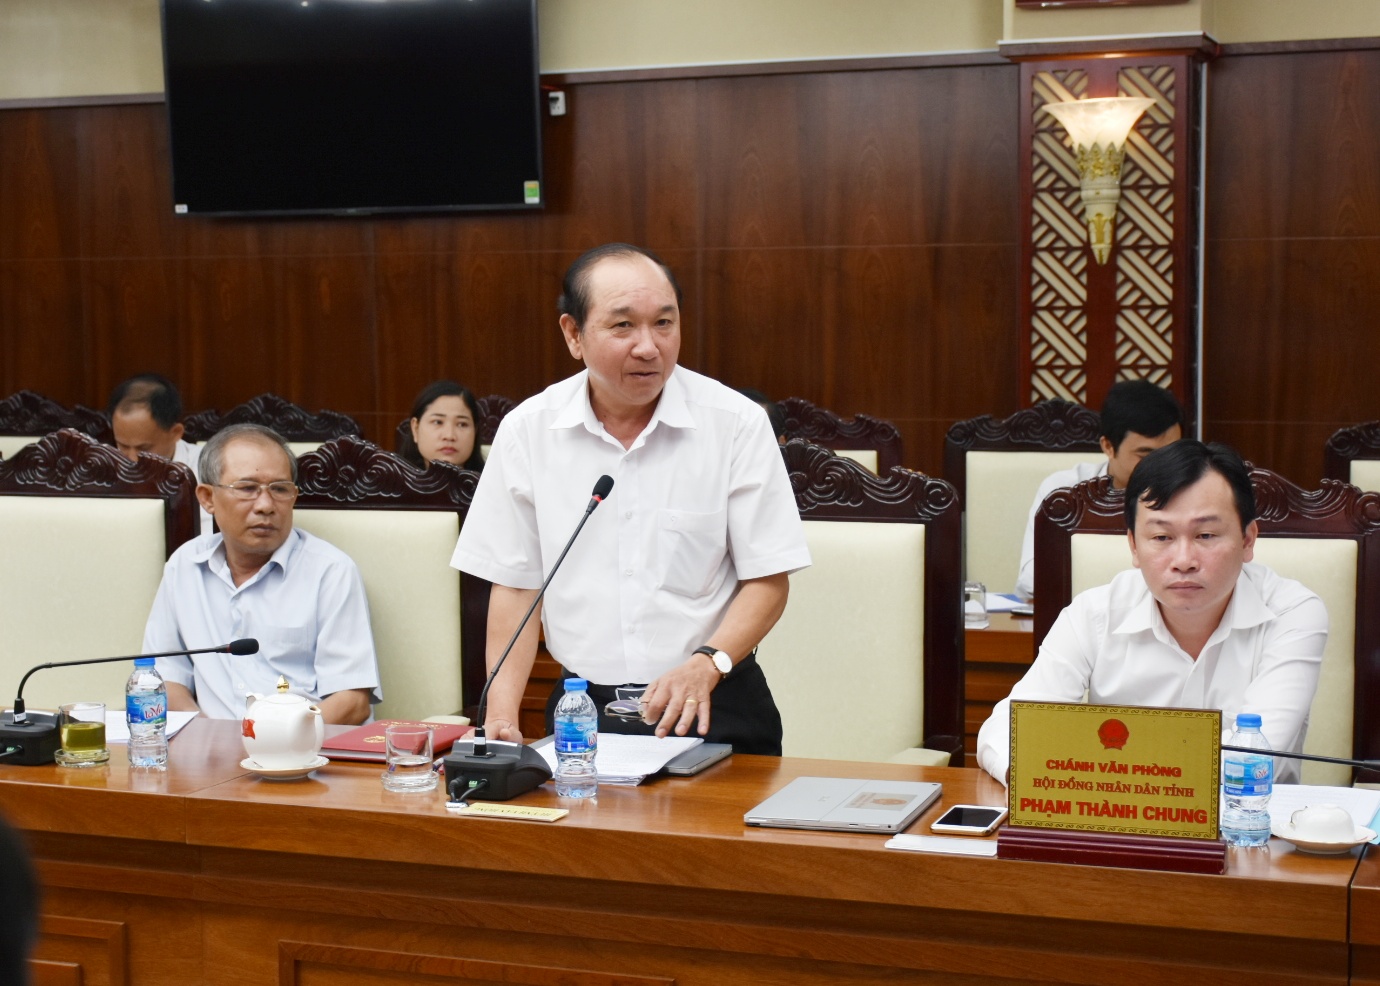 Đồng chí Huỳnh Văn Hồng, Phó Trưởng Ban Văn hóa-Xã hội HĐND tỉnh báo cáo về kết quả khảo sát công tác đầu tư, sử dụng các công trình hồ bơi trên địa bàn tỉnh.